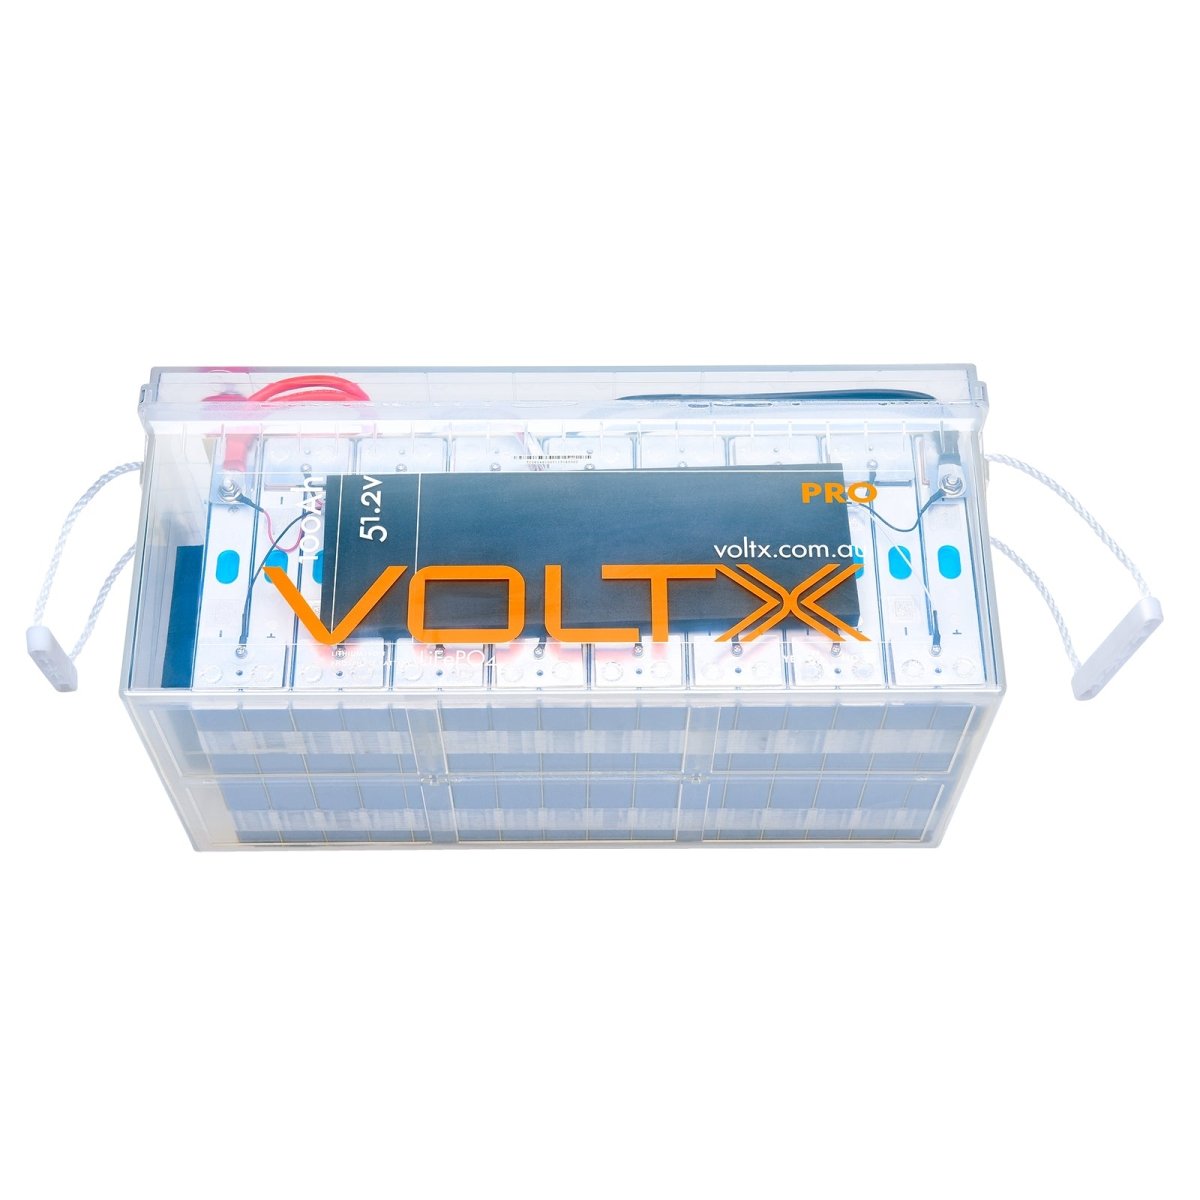 VoltX 48V Lithium Battery 100Ah Plus - Outdoorium